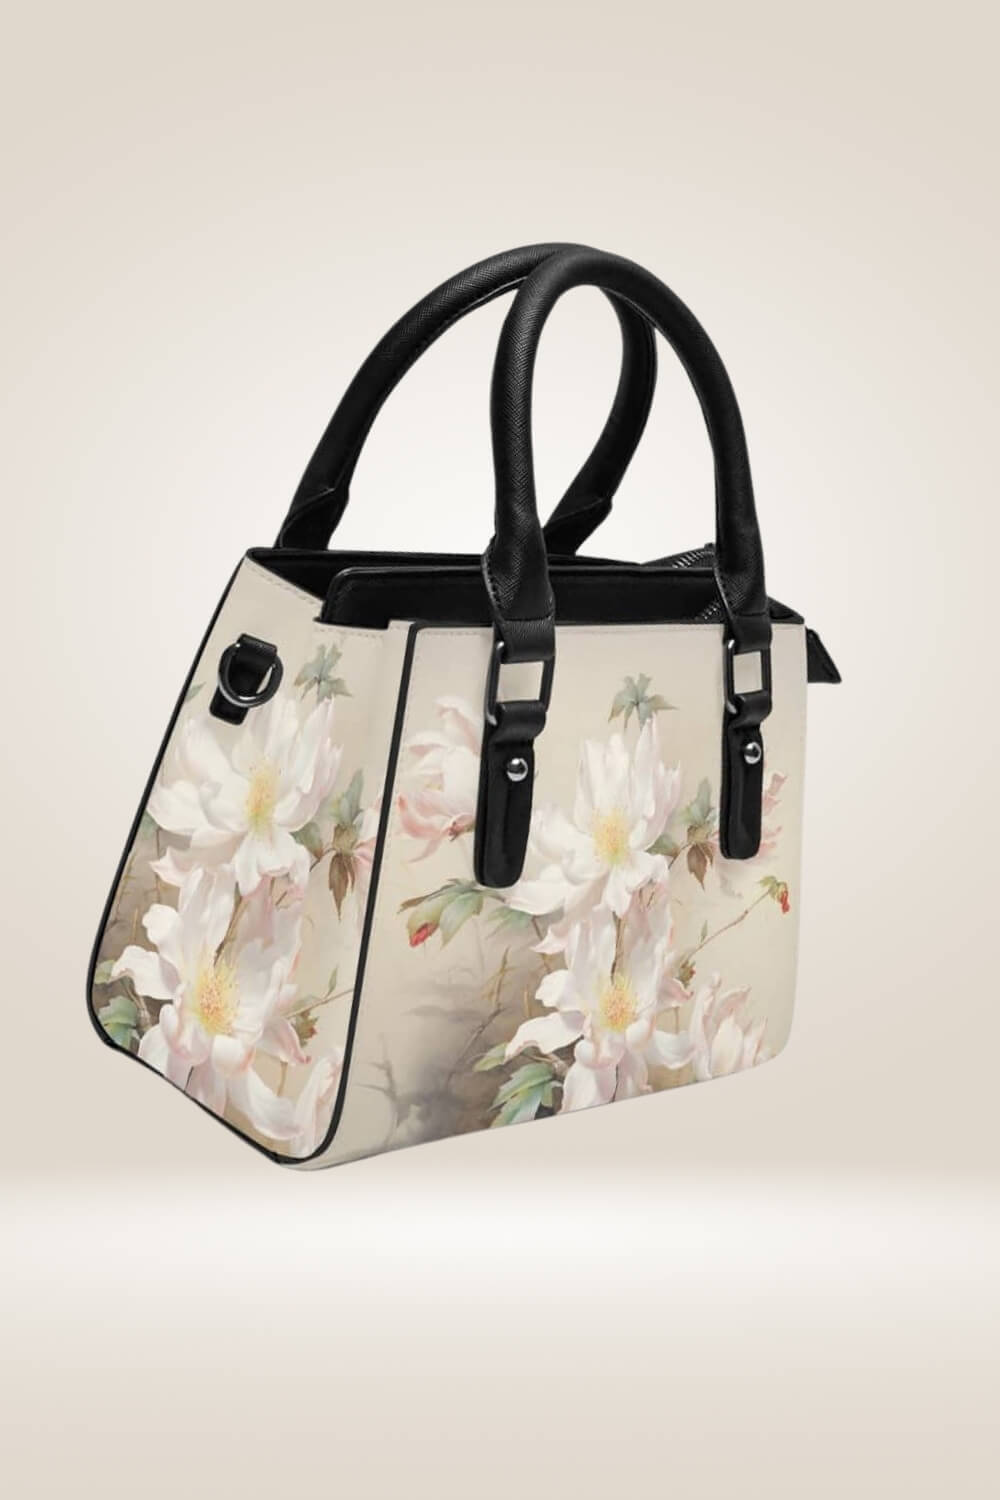 Off White Satchel Bag With Flowers - TGC Boutique - Satchel Handbag